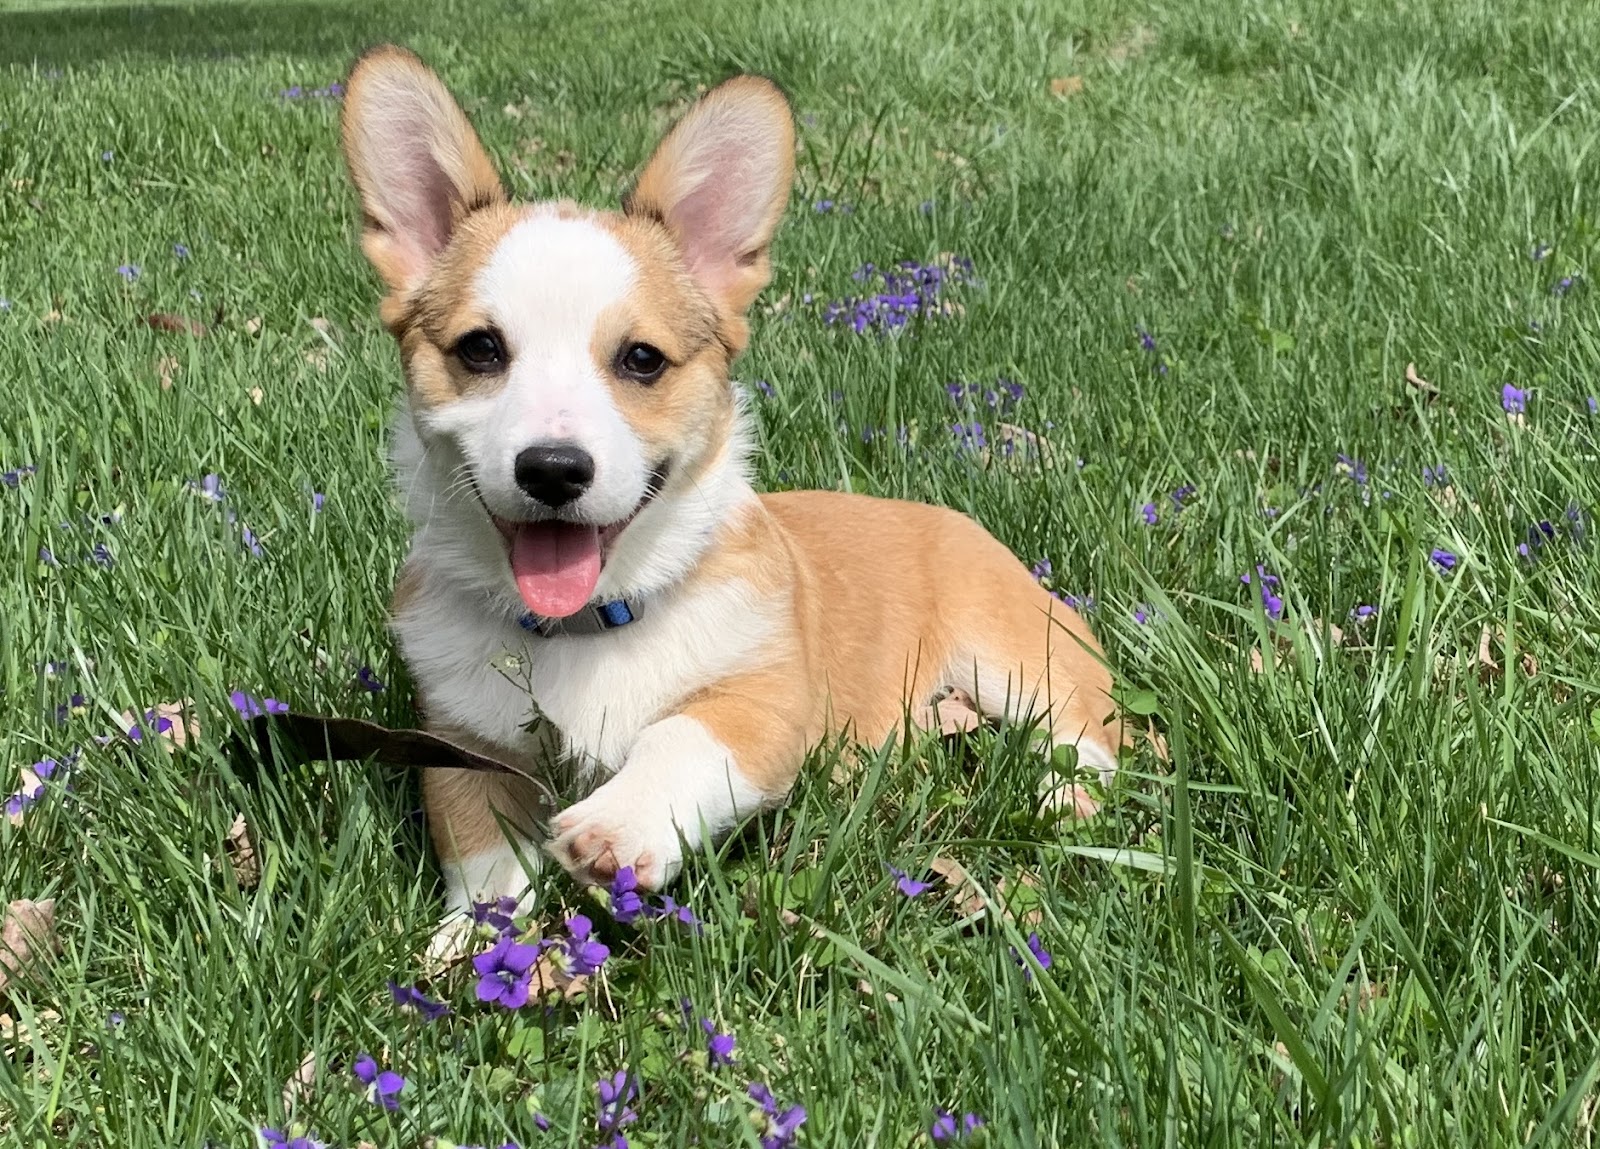 Cute little corgi puppy in the grass